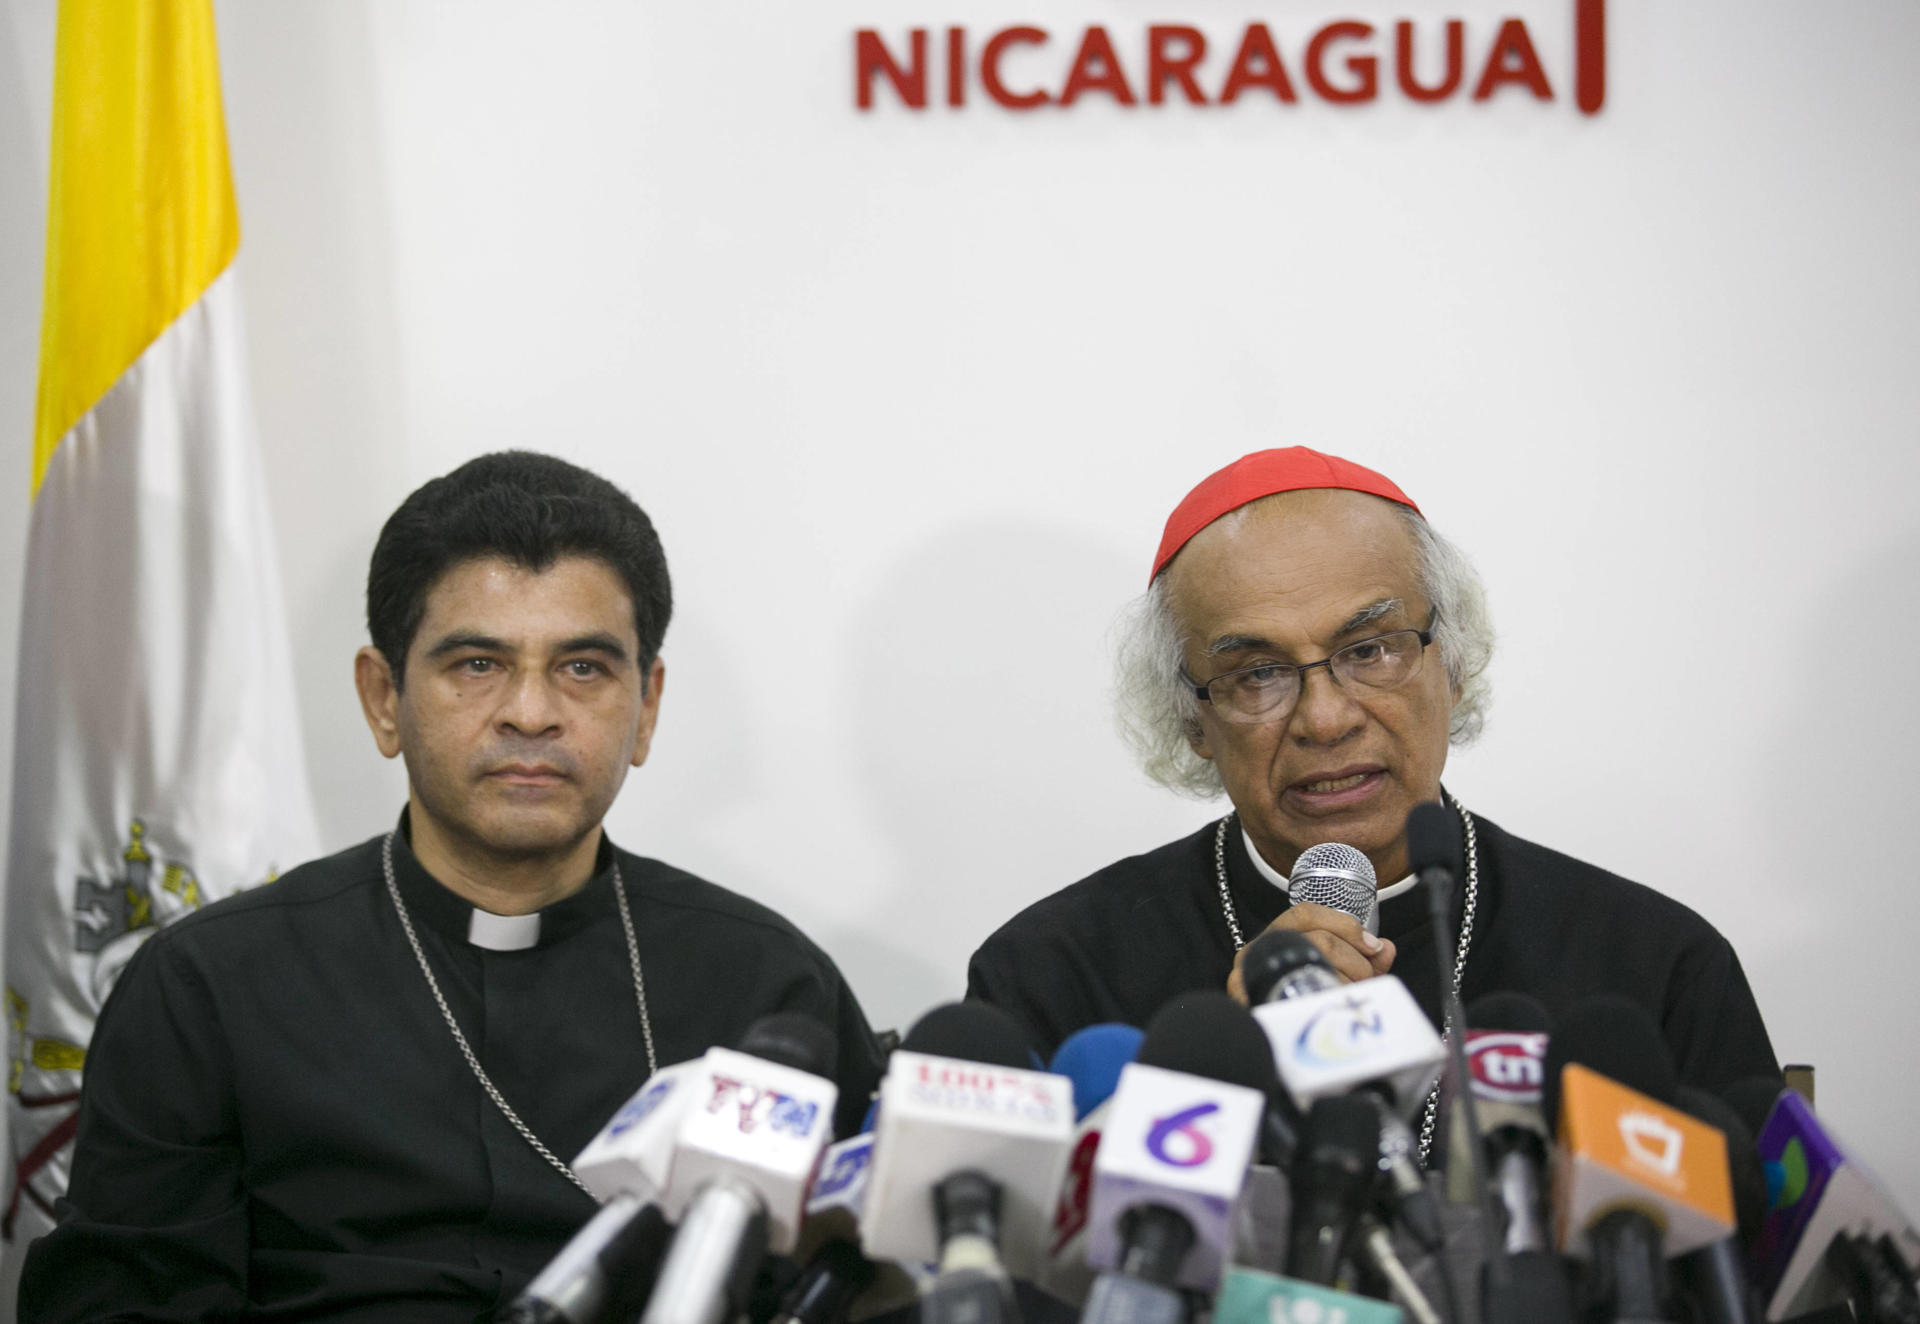 El obispo Rolando Álvarez (izquierda) junto al cardenal de Nicaragua, Leopoldo Brenes (derecha), en una imagen de archivo.